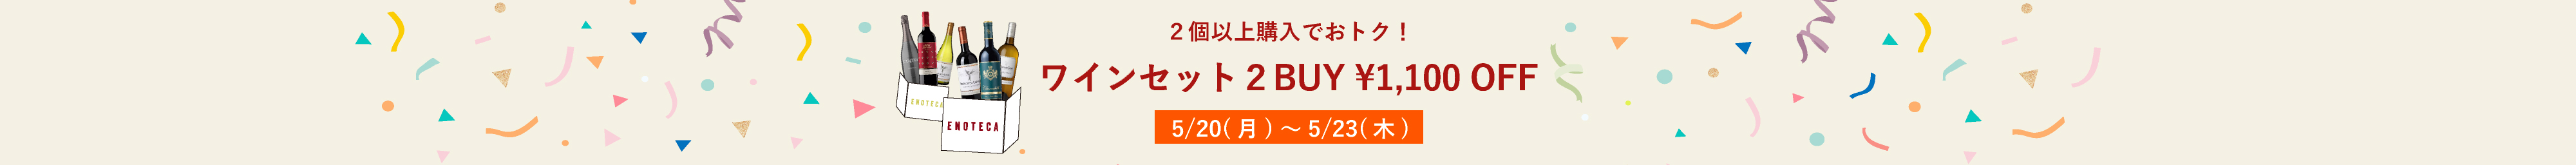 ワインセット2BUY1,100円OFFキャンペーン